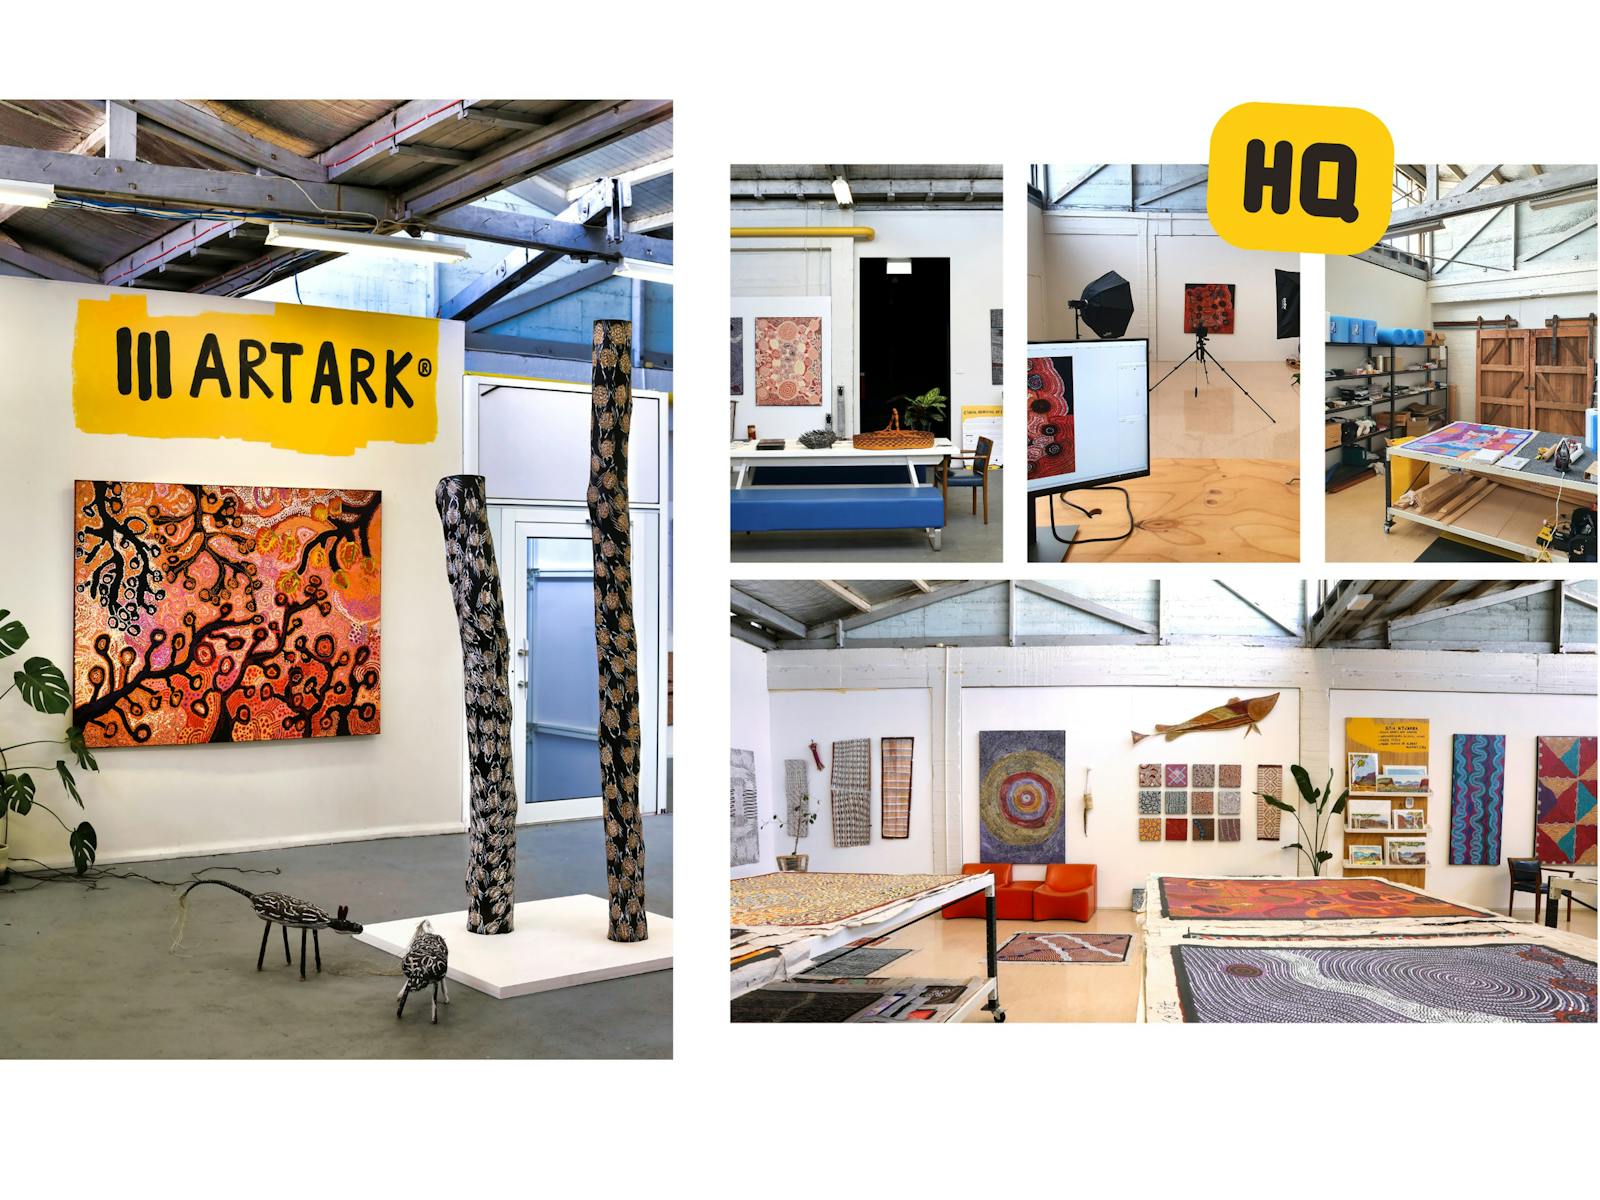 ART ARK HQ in Launceston, Tasmania